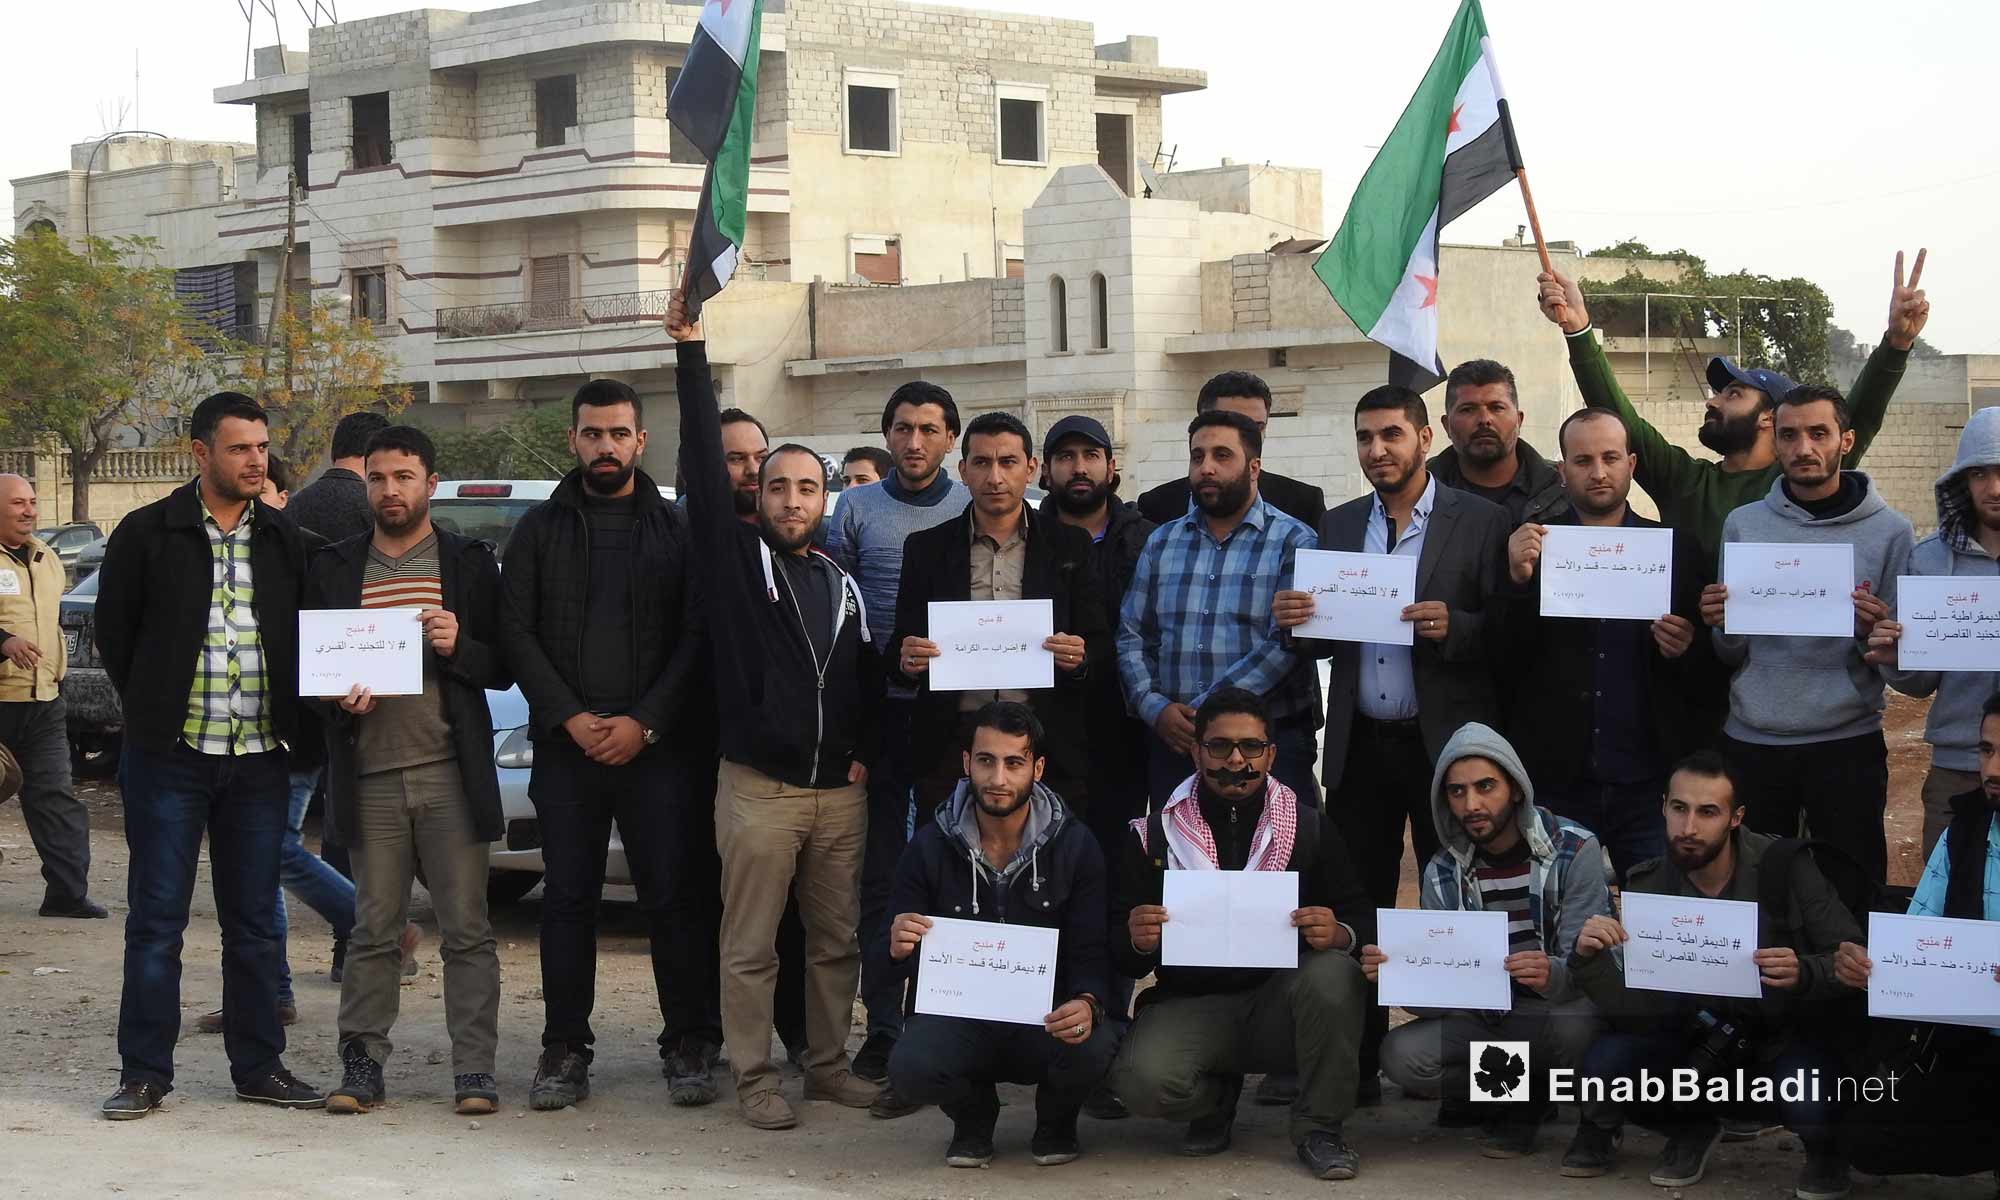 ناشطون في اعزاز ينظمون وقفة تضامنية مع "إضراب الكرامة" في منبج - 5 تشرين الثاني 2017 (عنب بلدي)